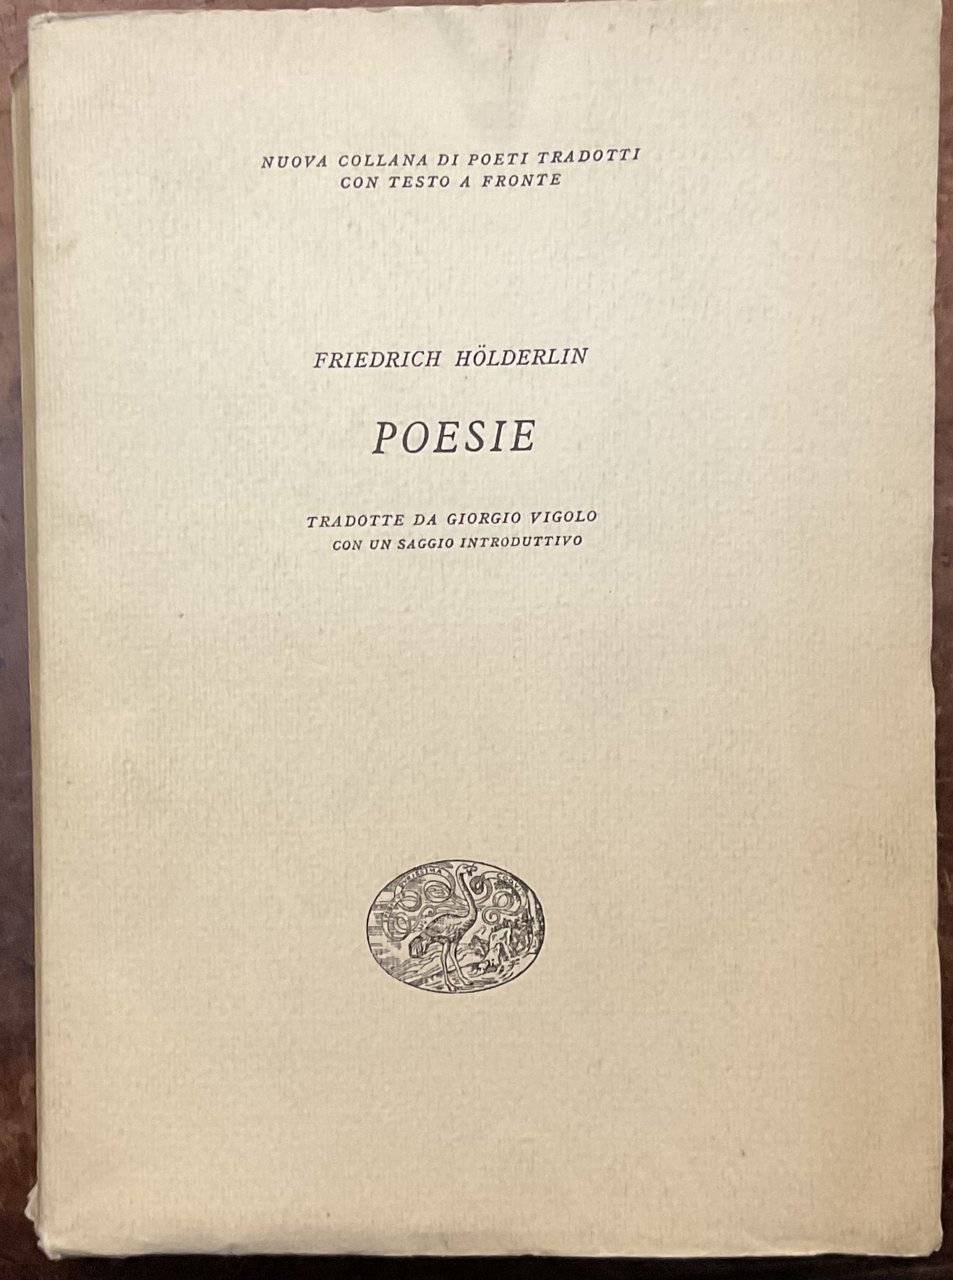 Friedrich Hölderlin. Poesie